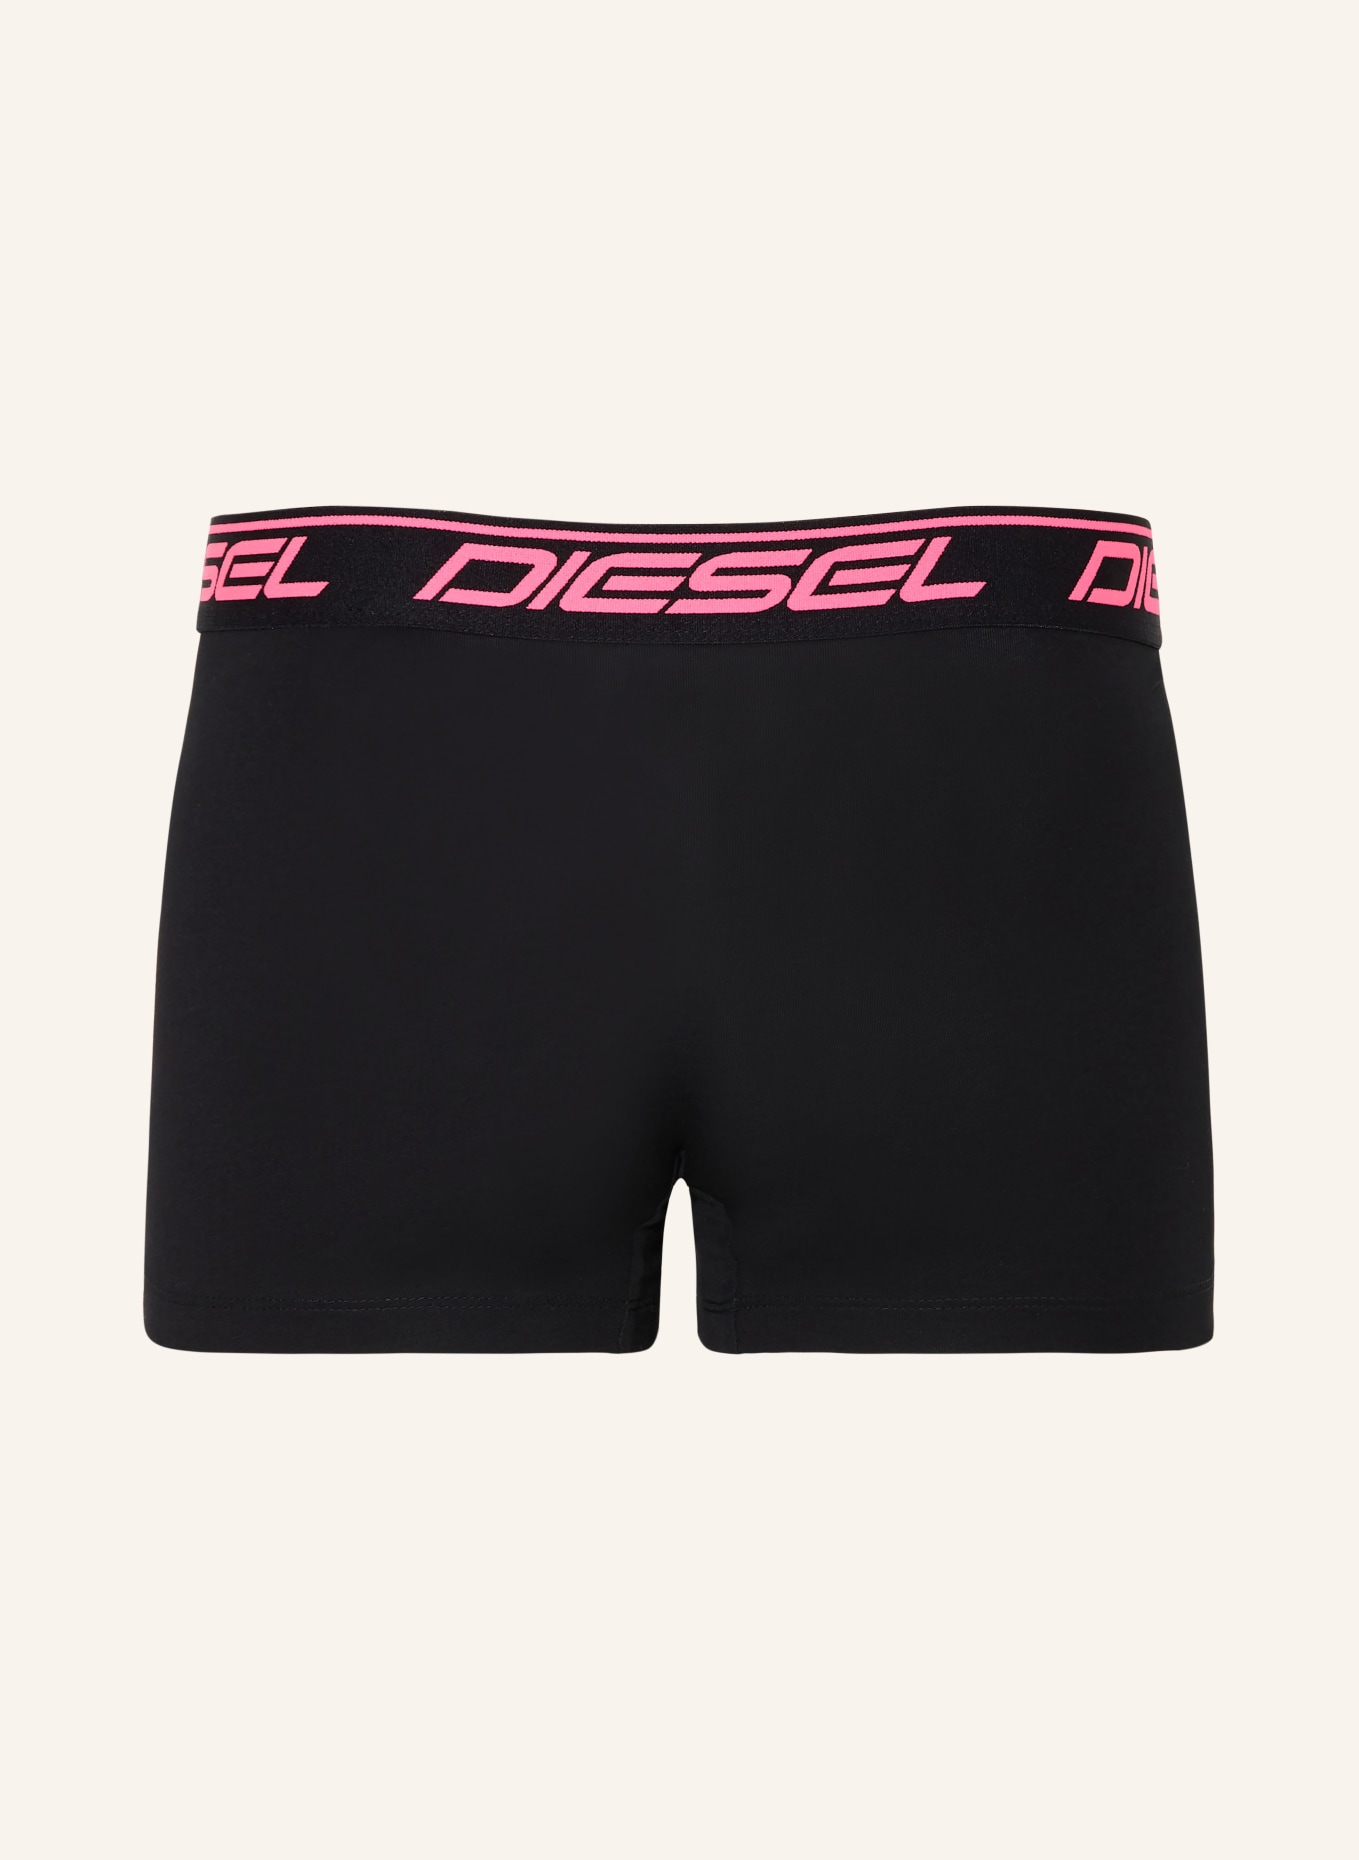 DIESEL 3-pack boxer shorts DAMIEN, Color: BLACK (Image 2)